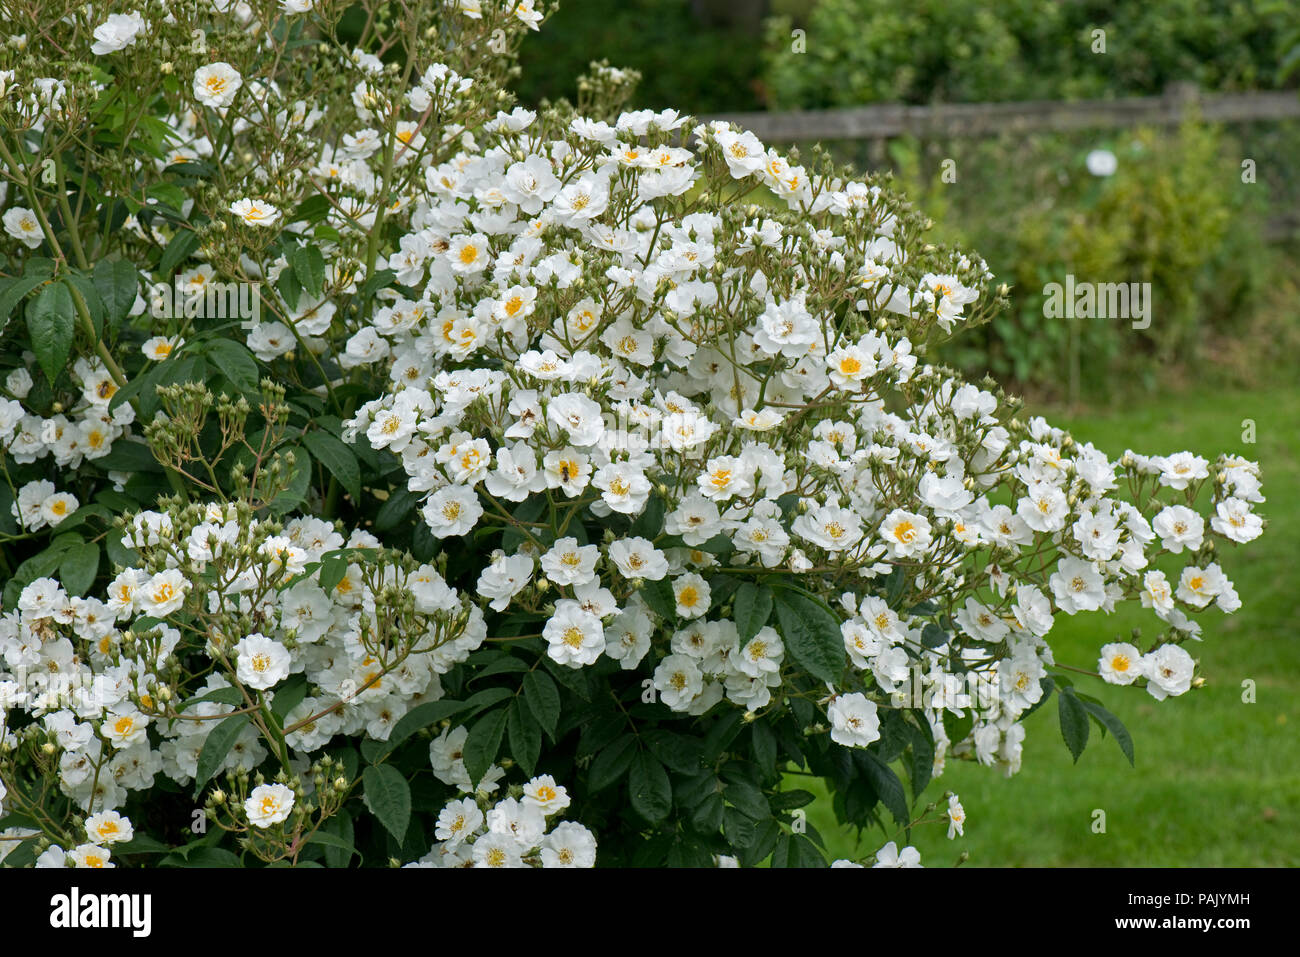 Weiß wandern, klettern Rose' Rambling Rector mit üppigen Blüten mit gelben Zentren. Attraktiv für Bienen und andere Bestäuber. Stockfoto